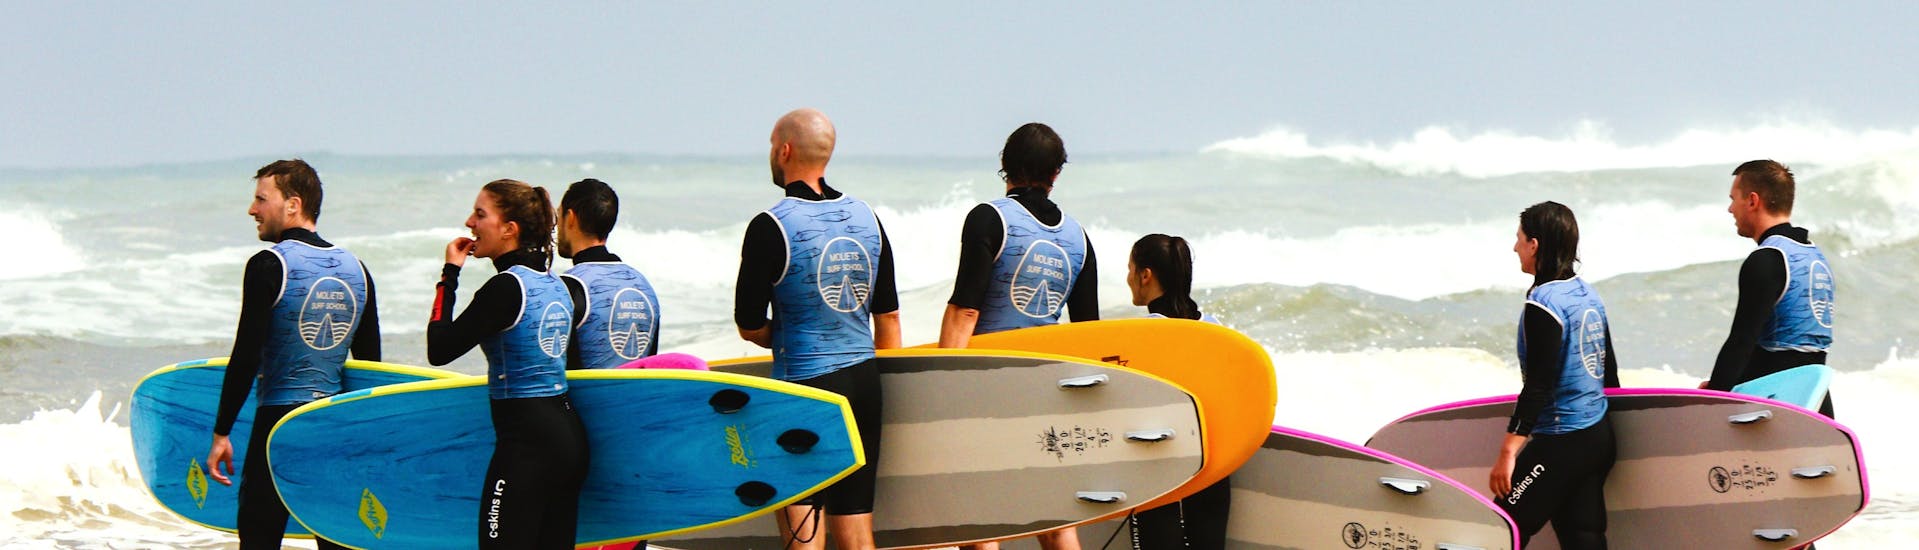 Des surfeurs étudient la mer avant de commencer leur Cours de surf (dès 6 ans) sur la plage de Moliets avec Moliets Surf School.